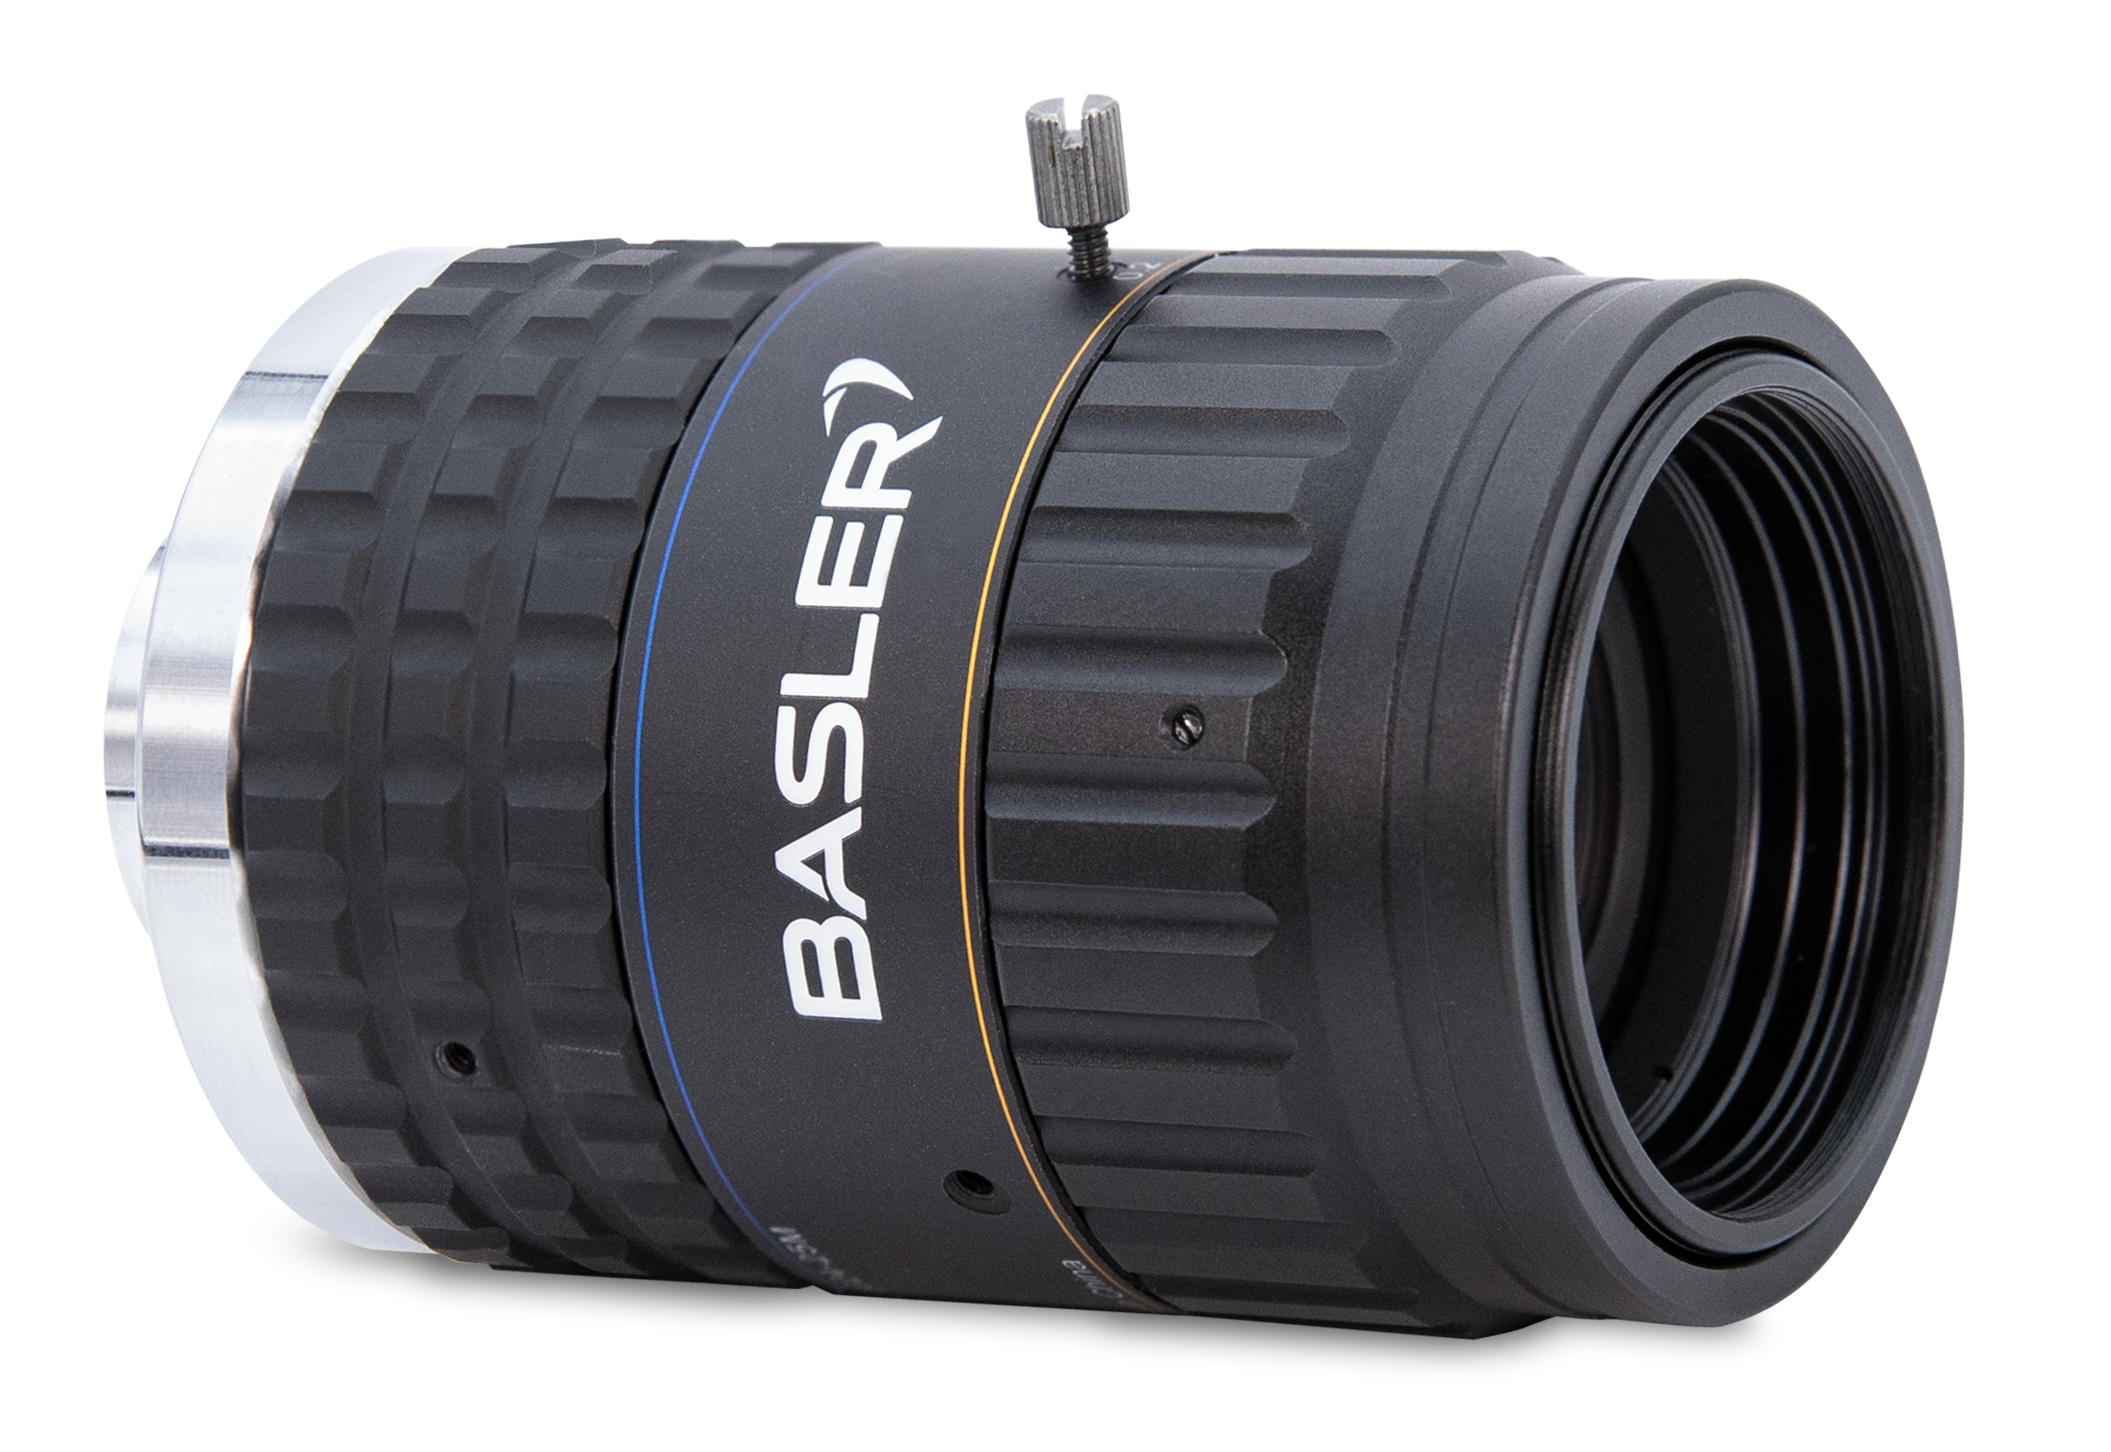 Basler Lens C12-5024-25M-P F2.4 f16.0 mm